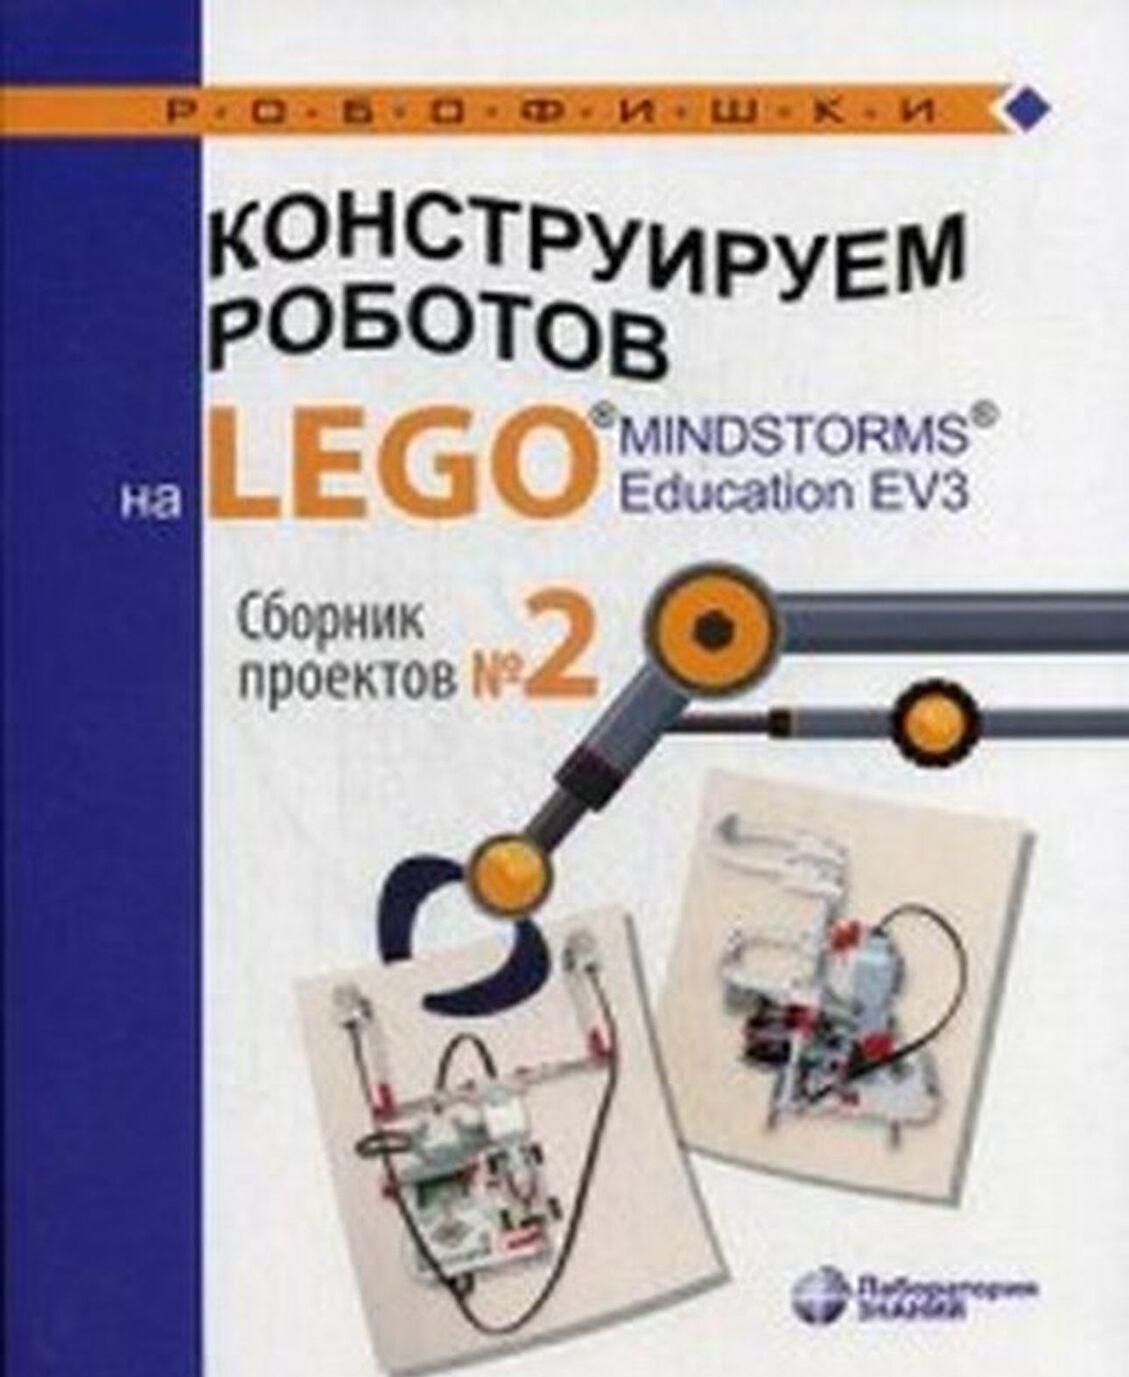 Carte Конструируем роботов на LEGO® MINDSTORMS® Education EV3. Сборник проектов №2 Ю.А. Серова